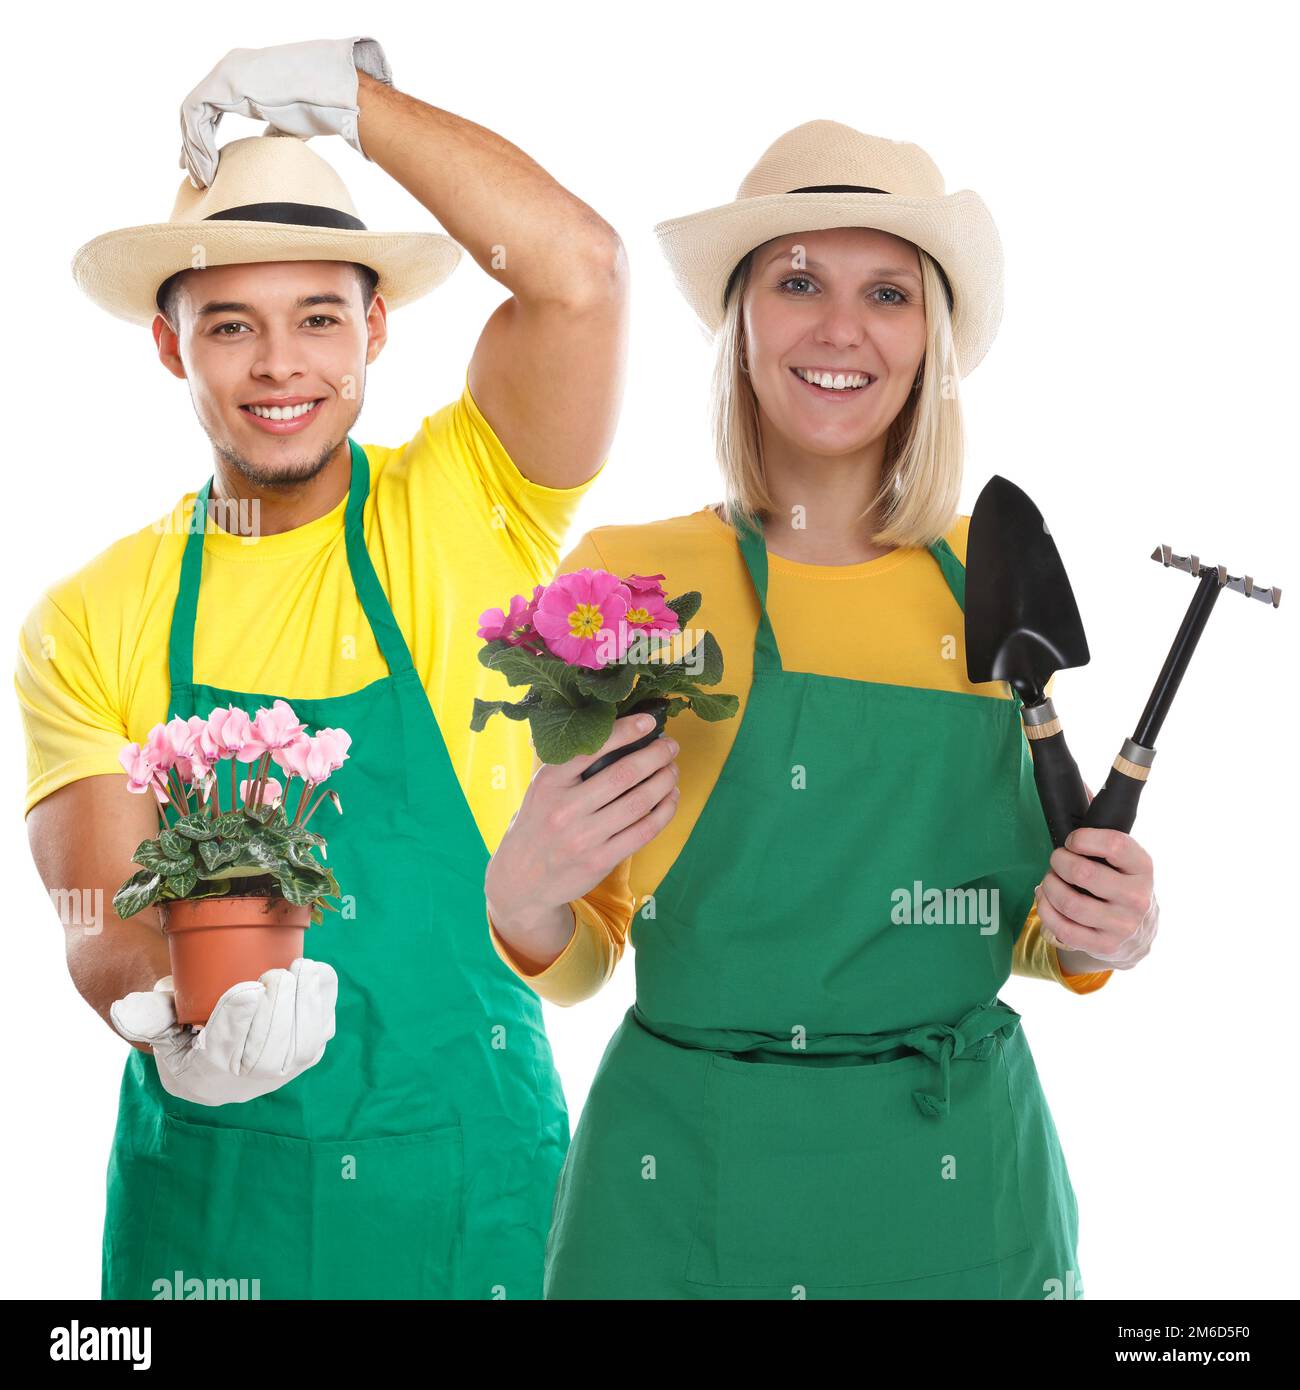 Gardener gardner team flower gardening garden tools occupation job isolated on white Stock Photo